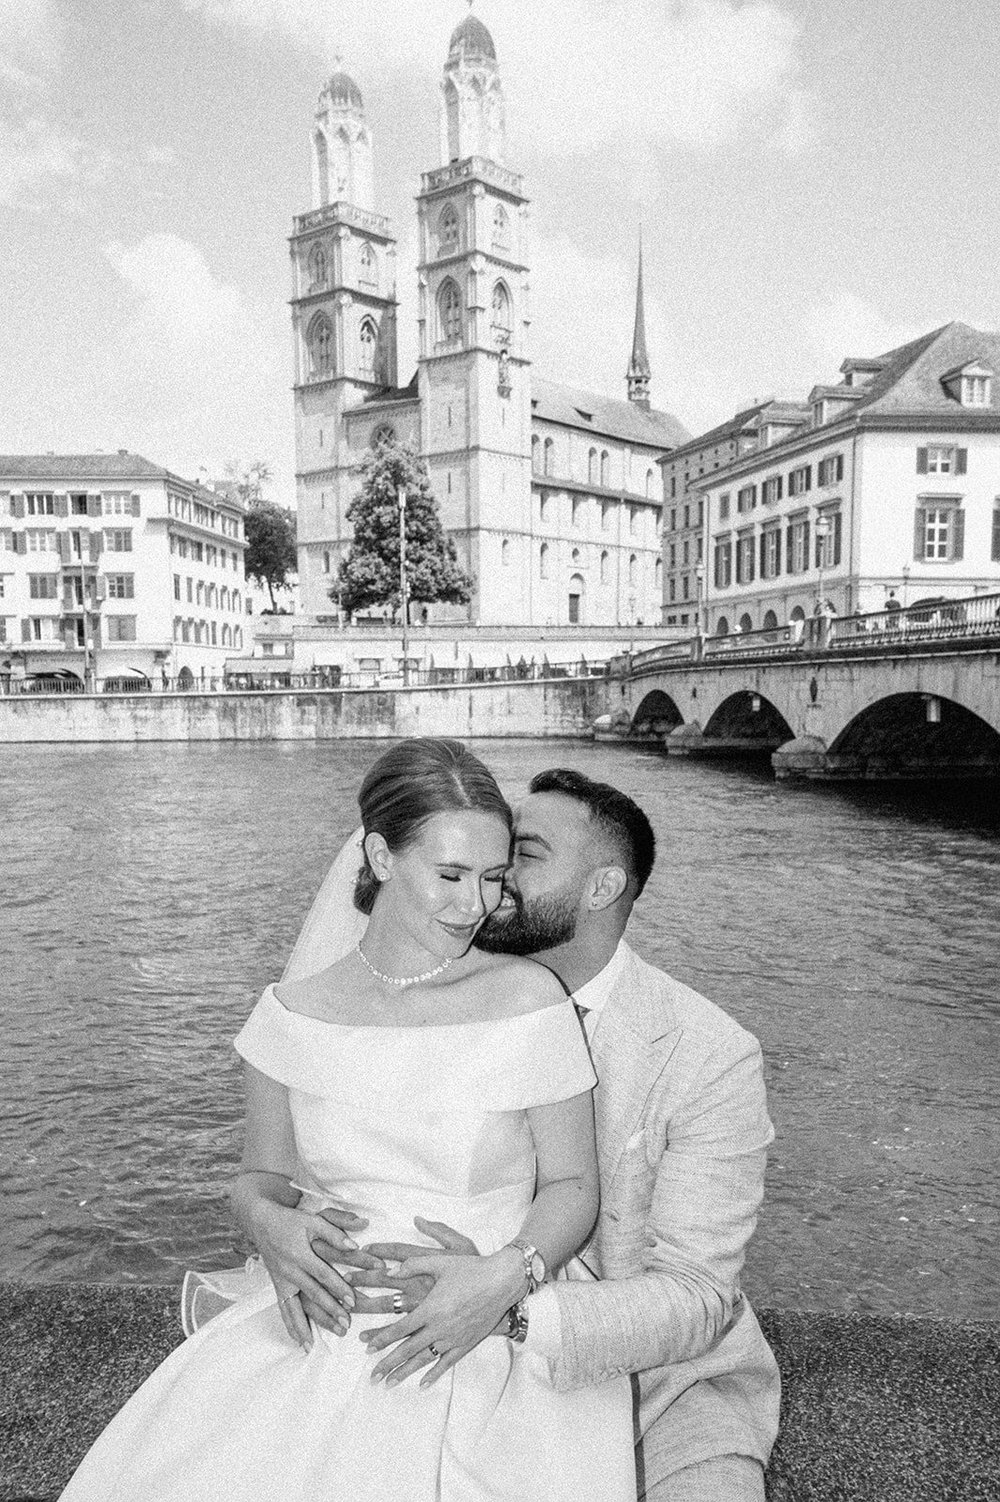 Hochzeitsfotograf Zürich